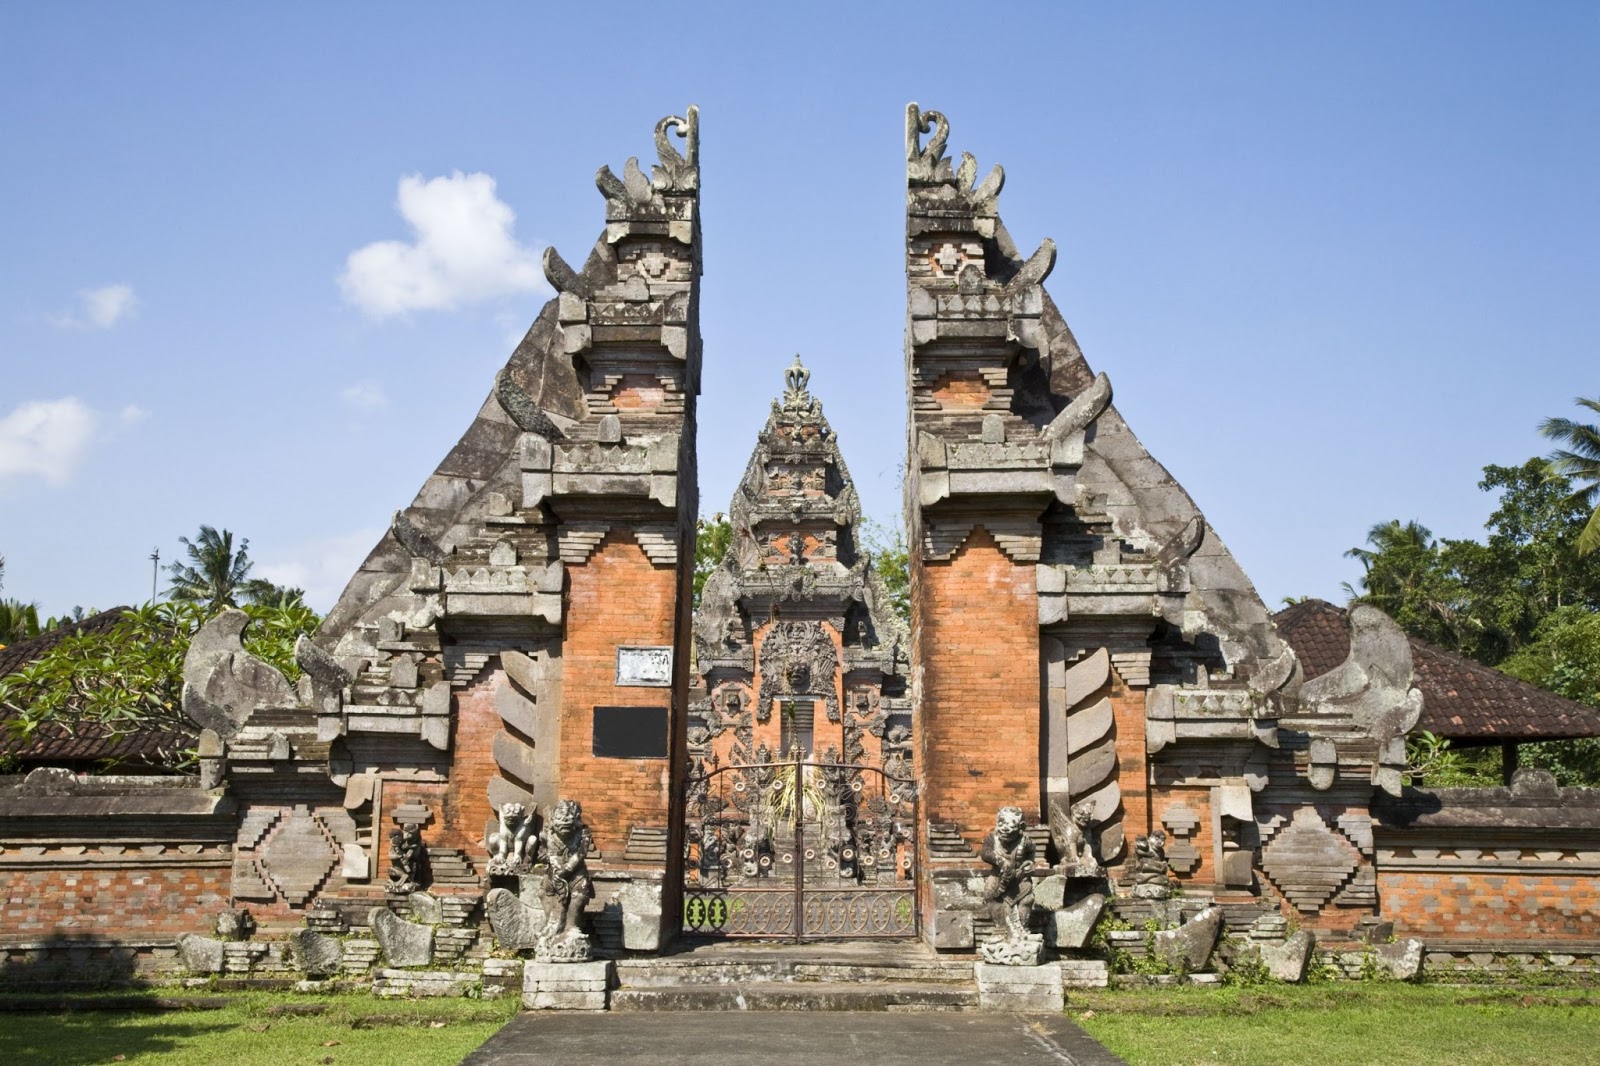  Rumah  Adat Bali  yang Menawan dan Penuh Filosofi Rumah  Adat